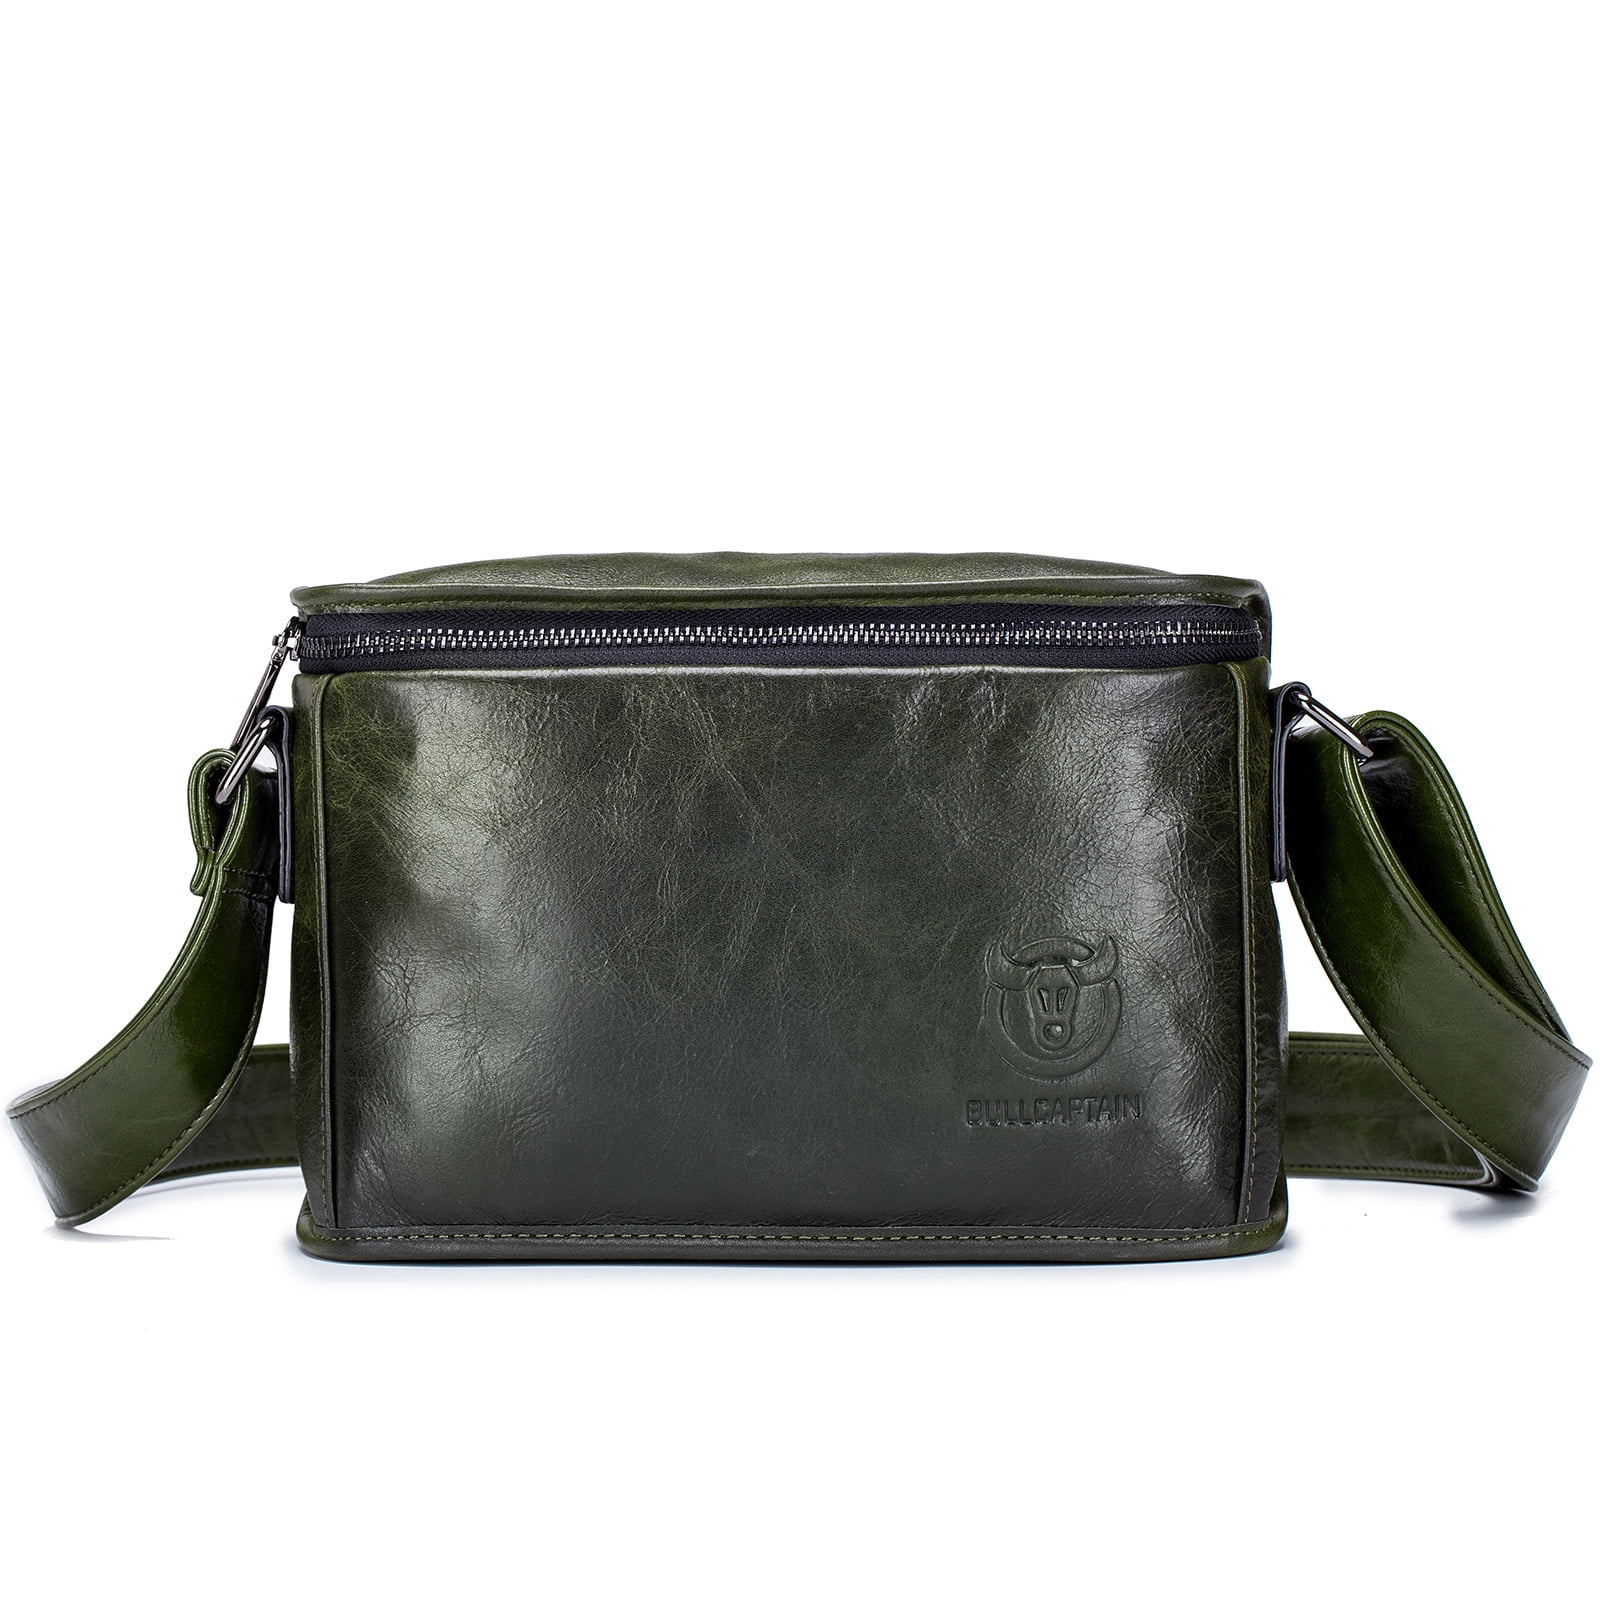 New Soft Leather Black Travel Bag Messanger Man Bag Crossover Shoulder Satchel 